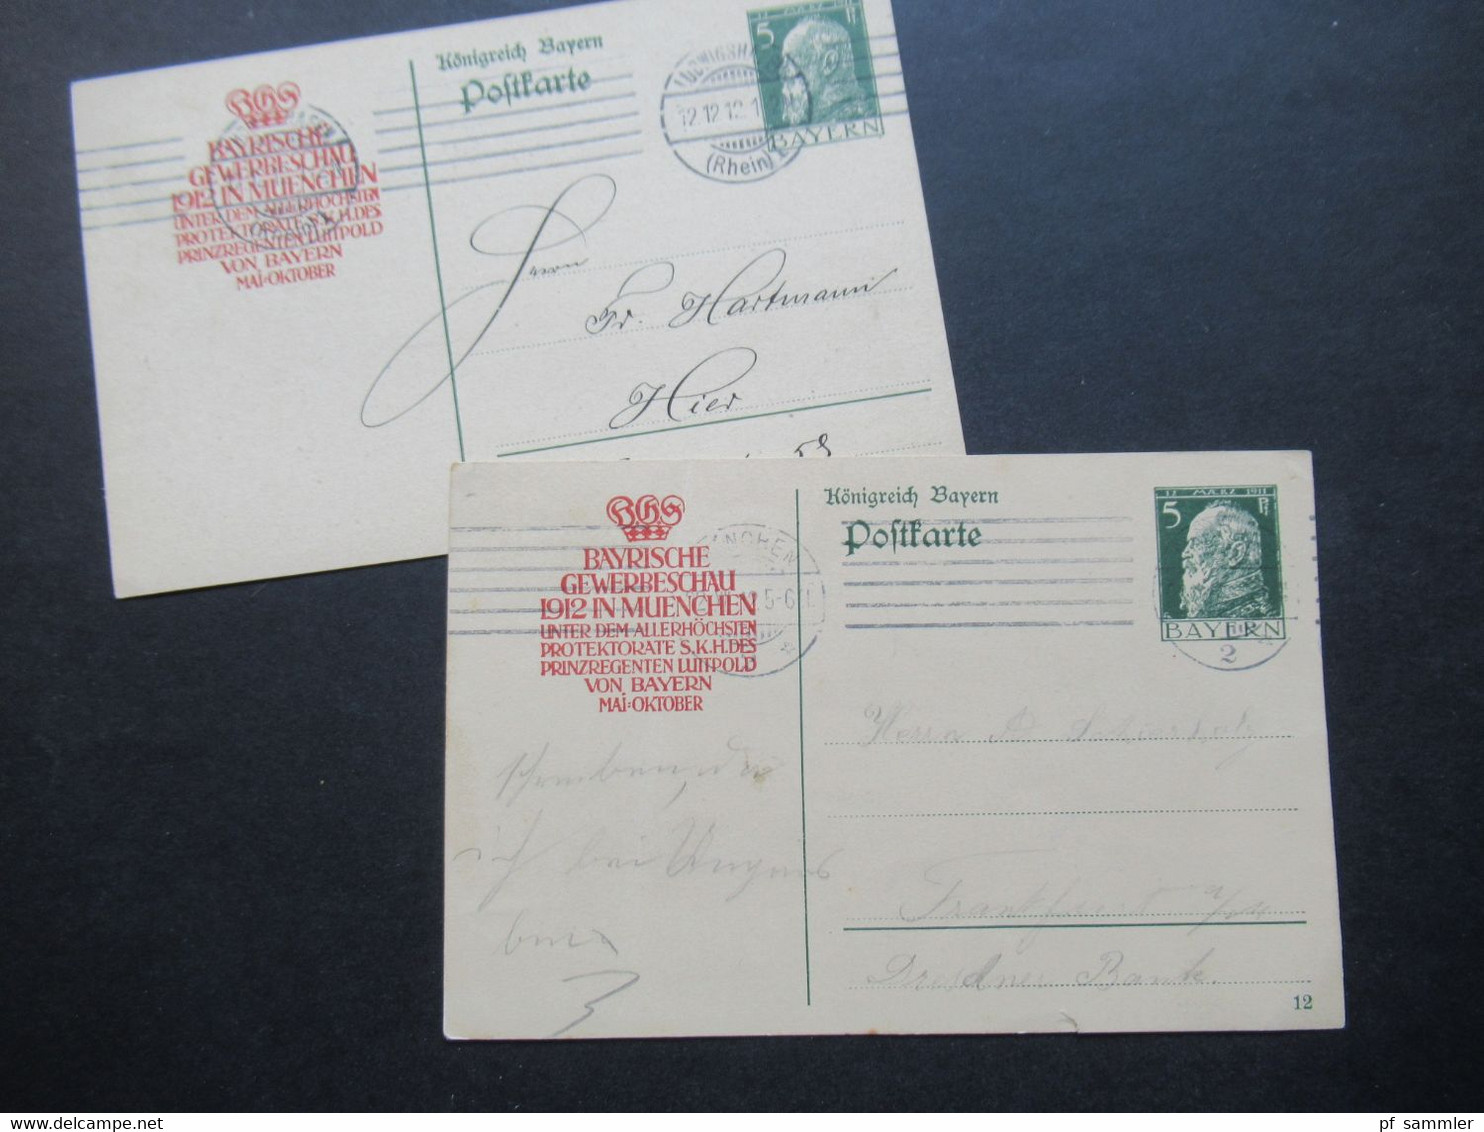 AD Bayern 1912 Postkarte / Ganzsache Mit Zudruck Bayrische Gewerbeschau 1912 In Muenchen Unter Protektorate Luitpold - Entiers Postaux